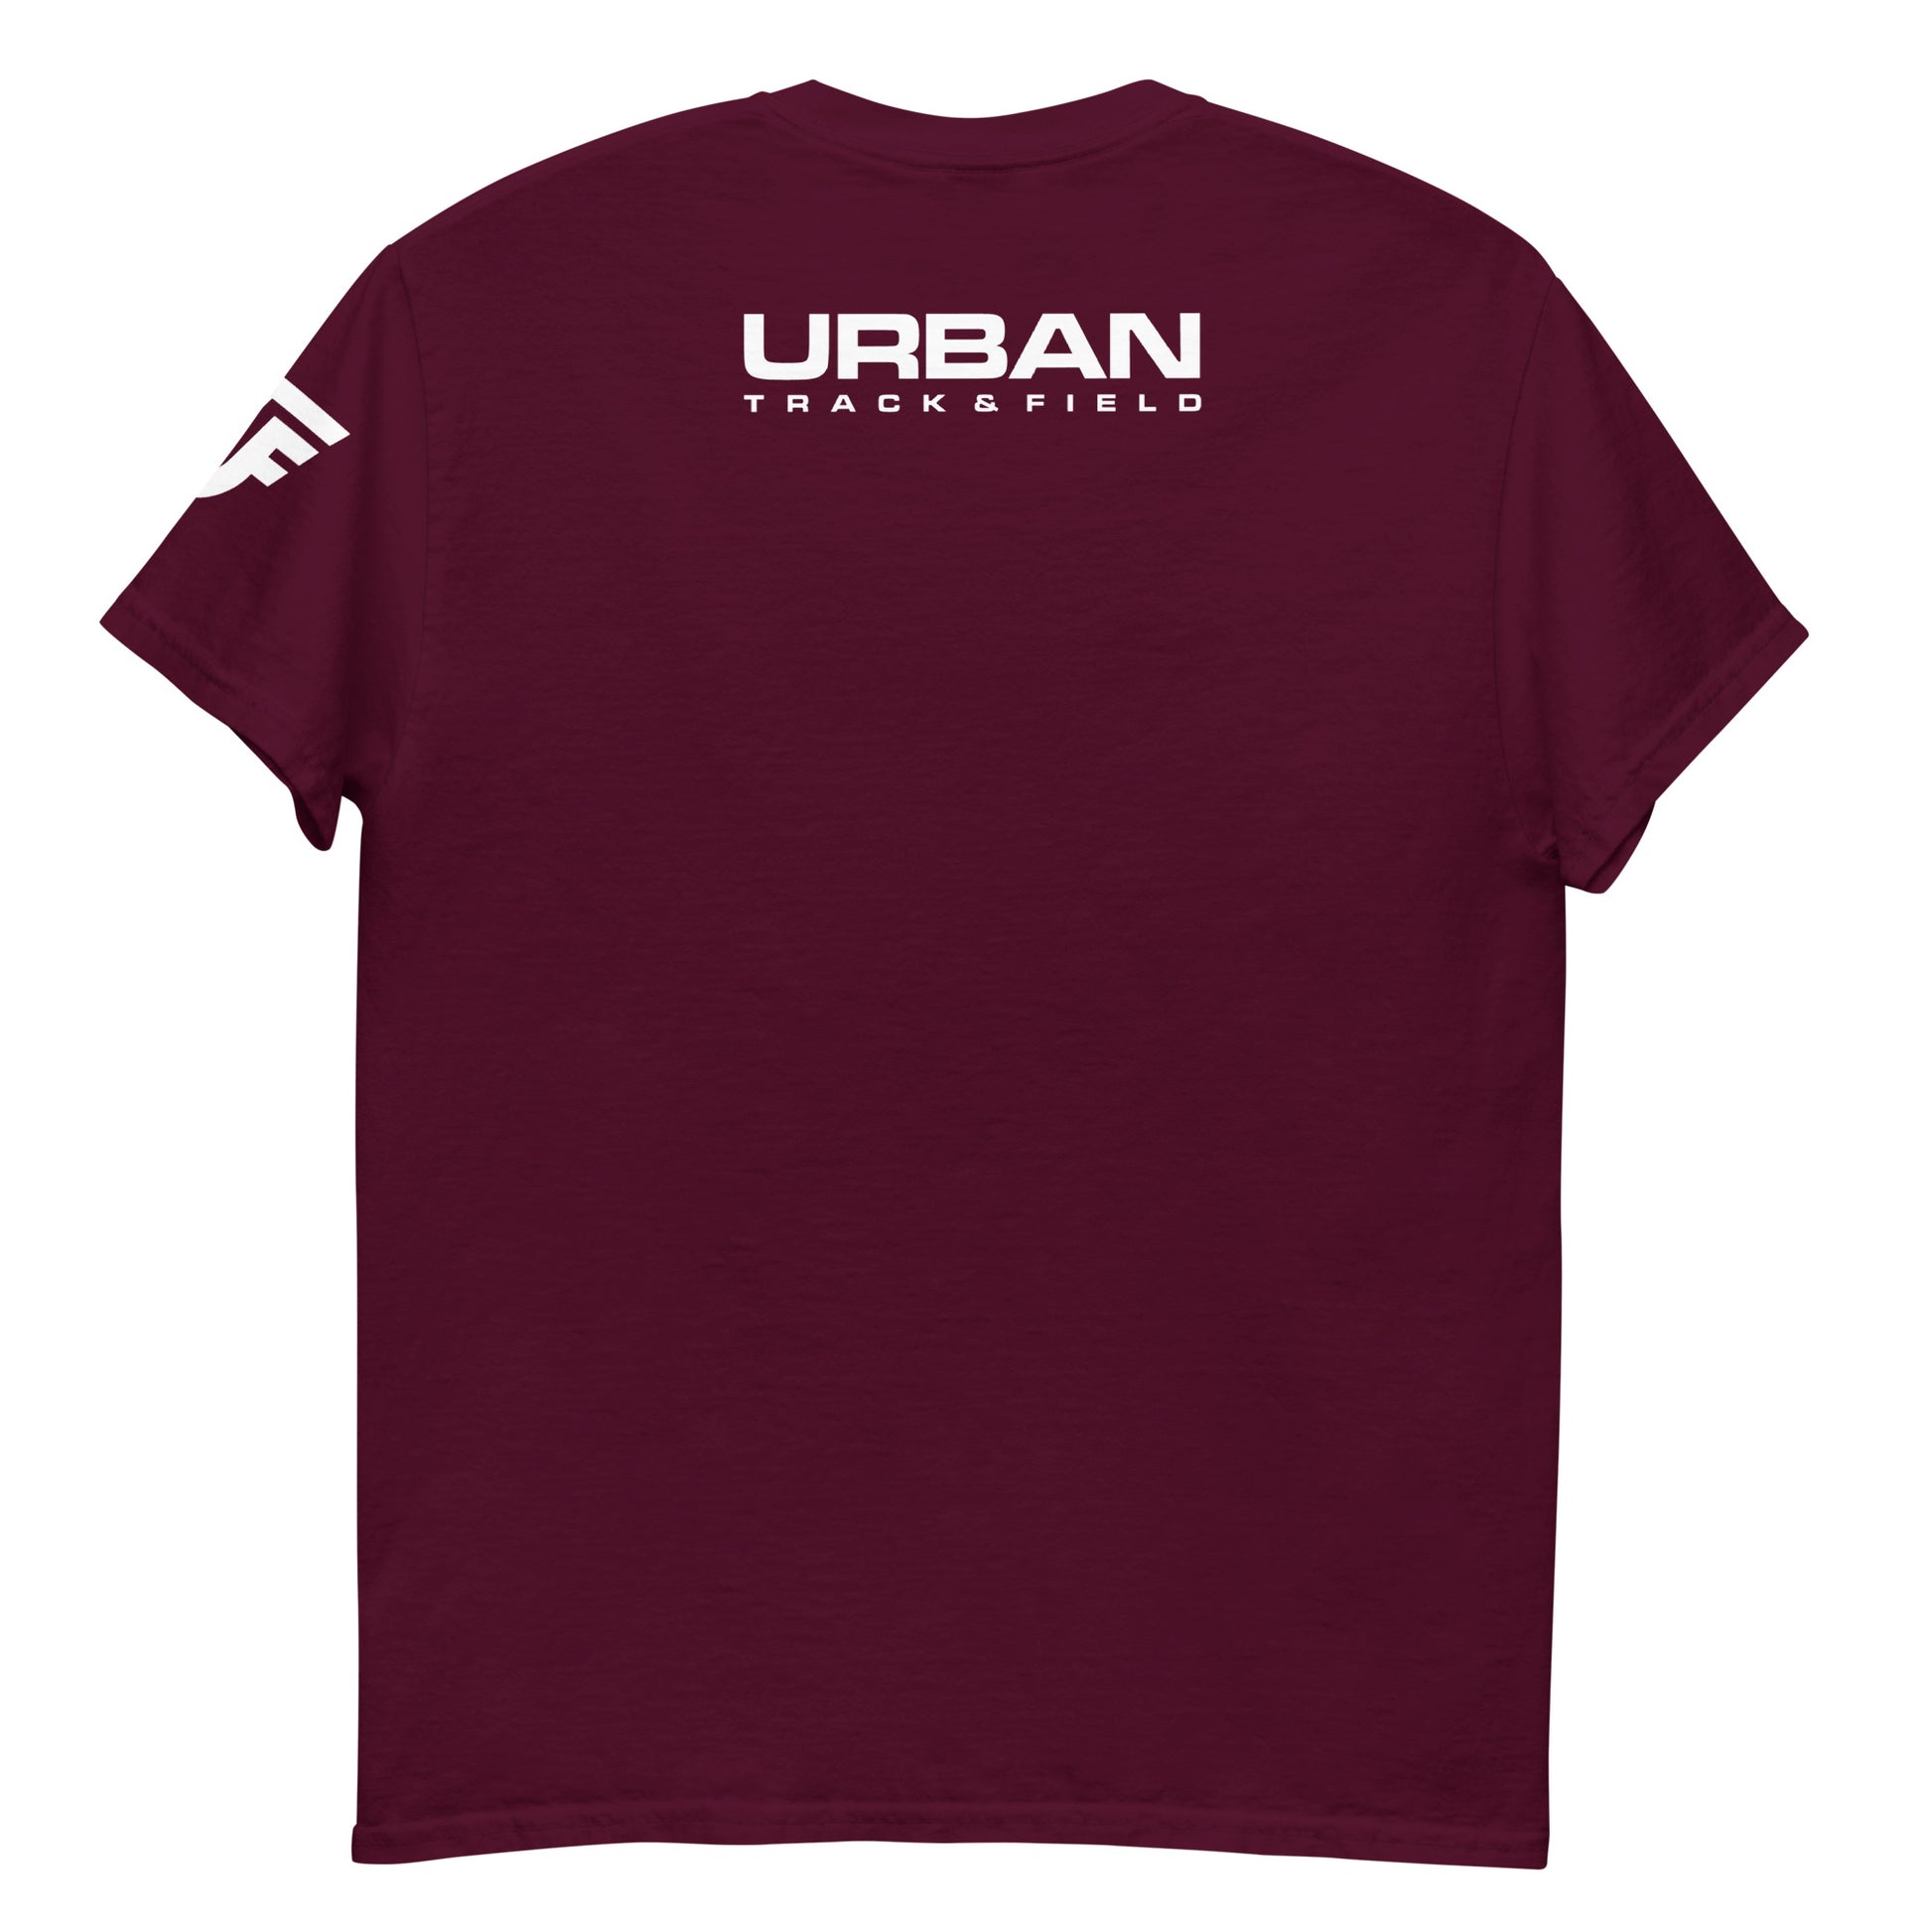 I LOVE Track & Field - Classic Tshirt - URBAN T&F